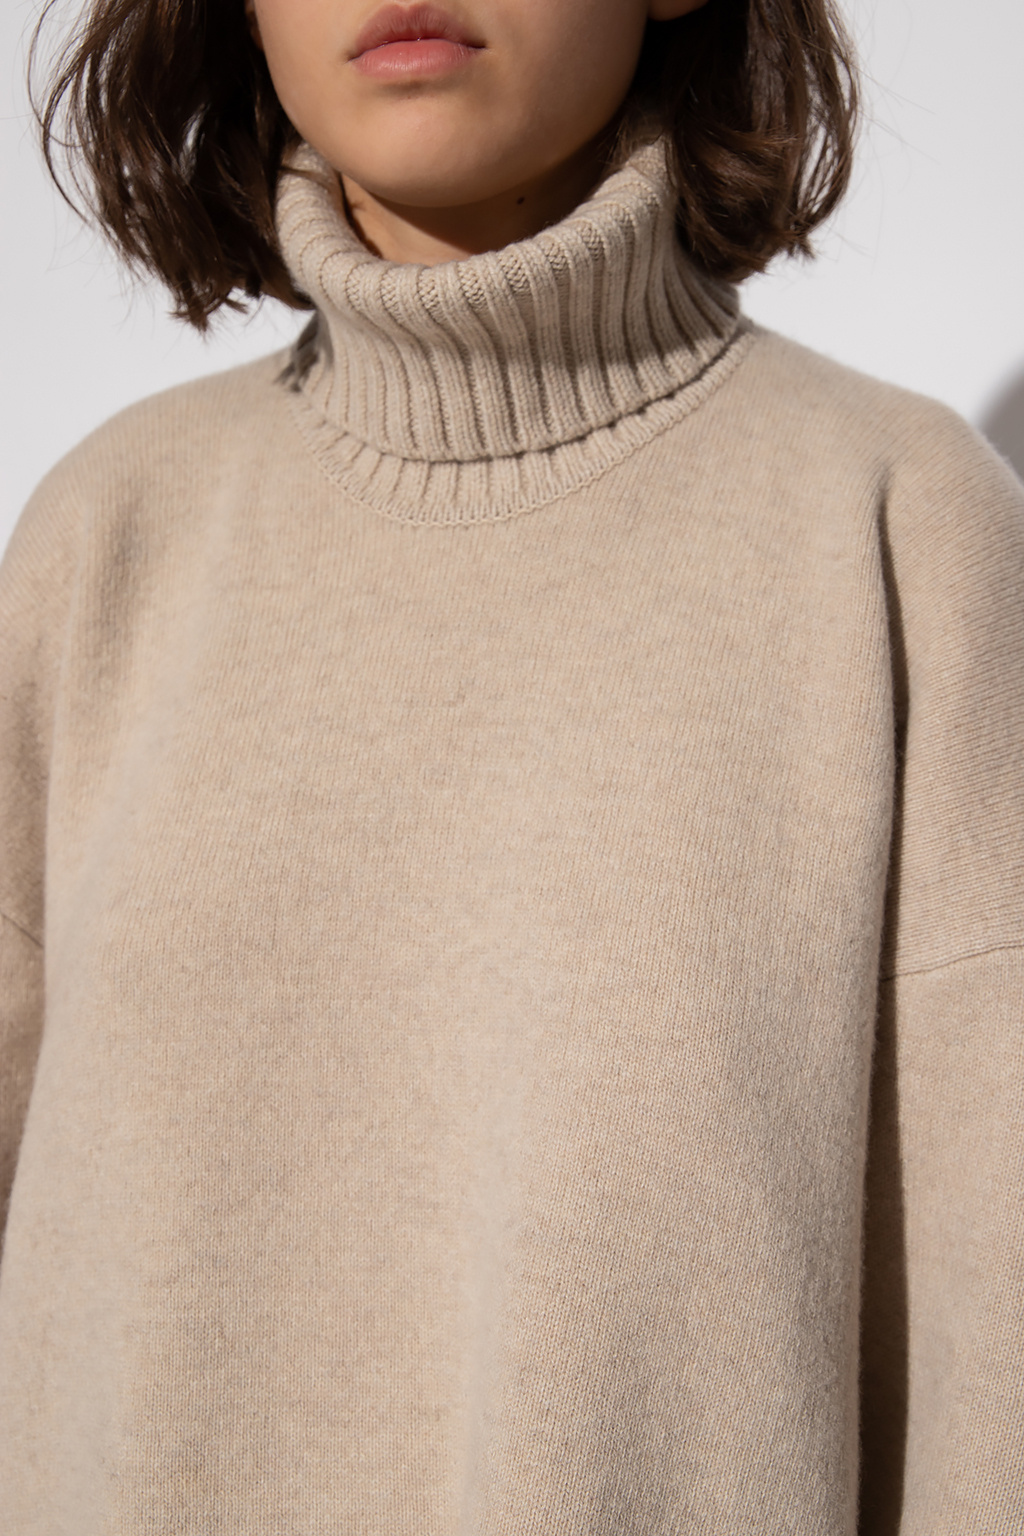 Proenza Schouler cardi-coat sweater